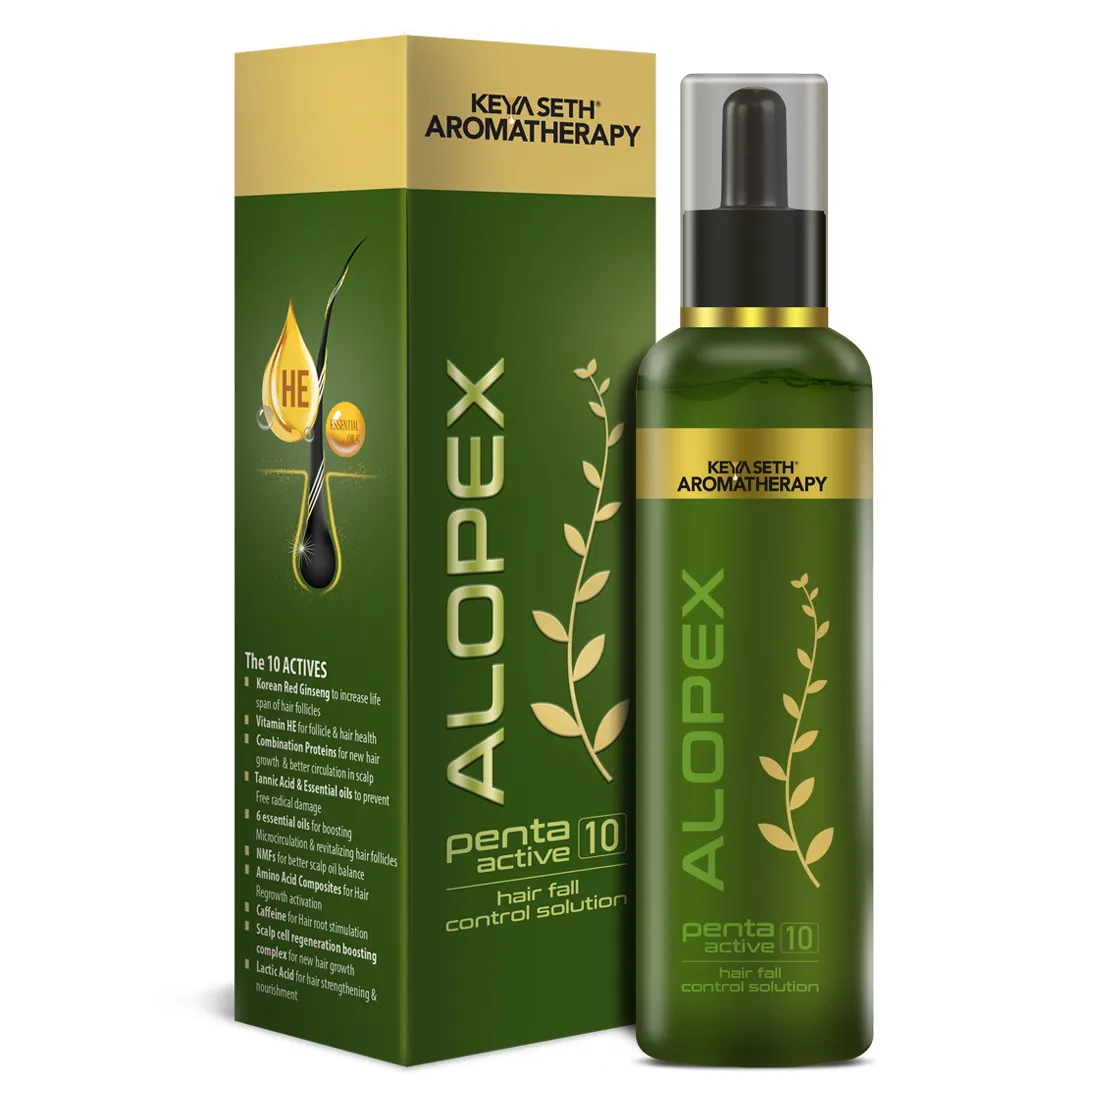 한국산 홍삼 비오틴과 비타민E가 풍부한 새로운 모발 성장 및 탈모 조절을 위한 알로펙스 펜타 액티브 10 솔루션